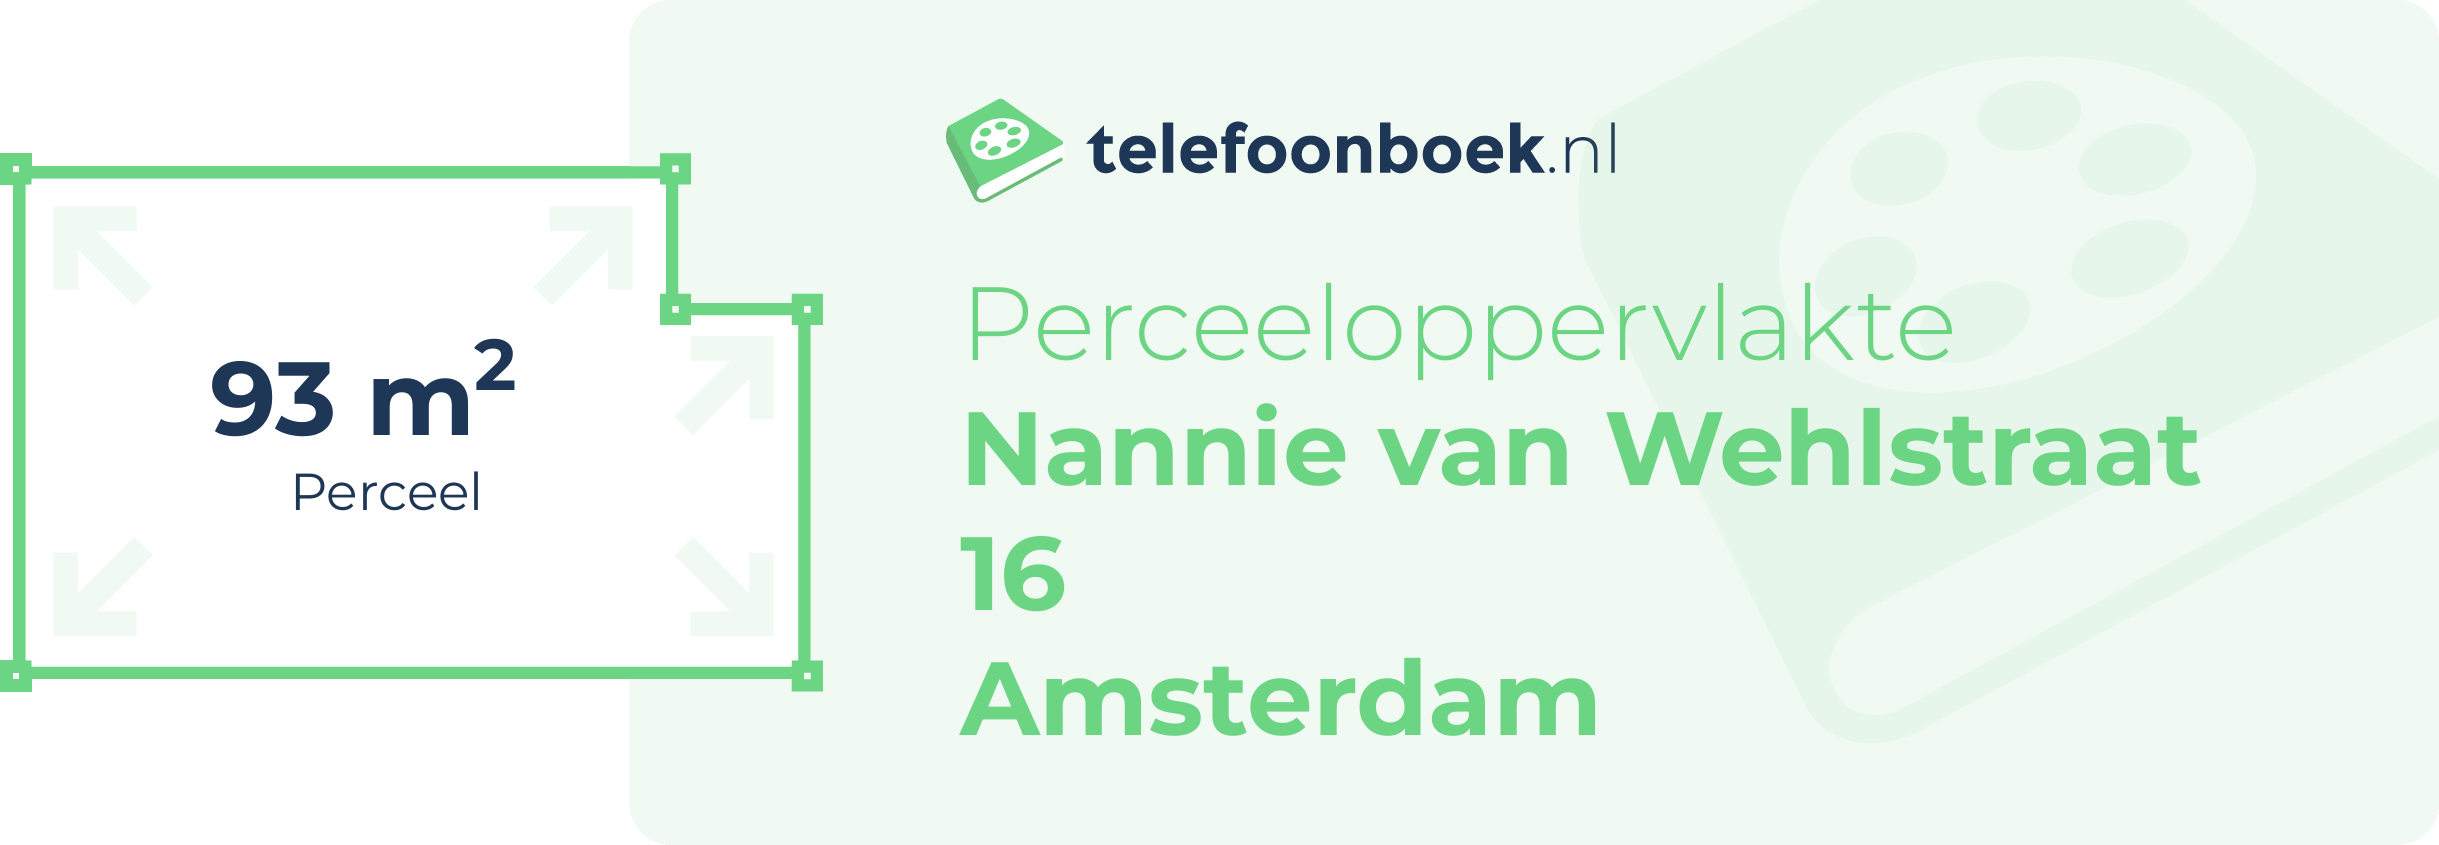 Perceeloppervlakte Nannie Van Wehlstraat 16 Amsterdam